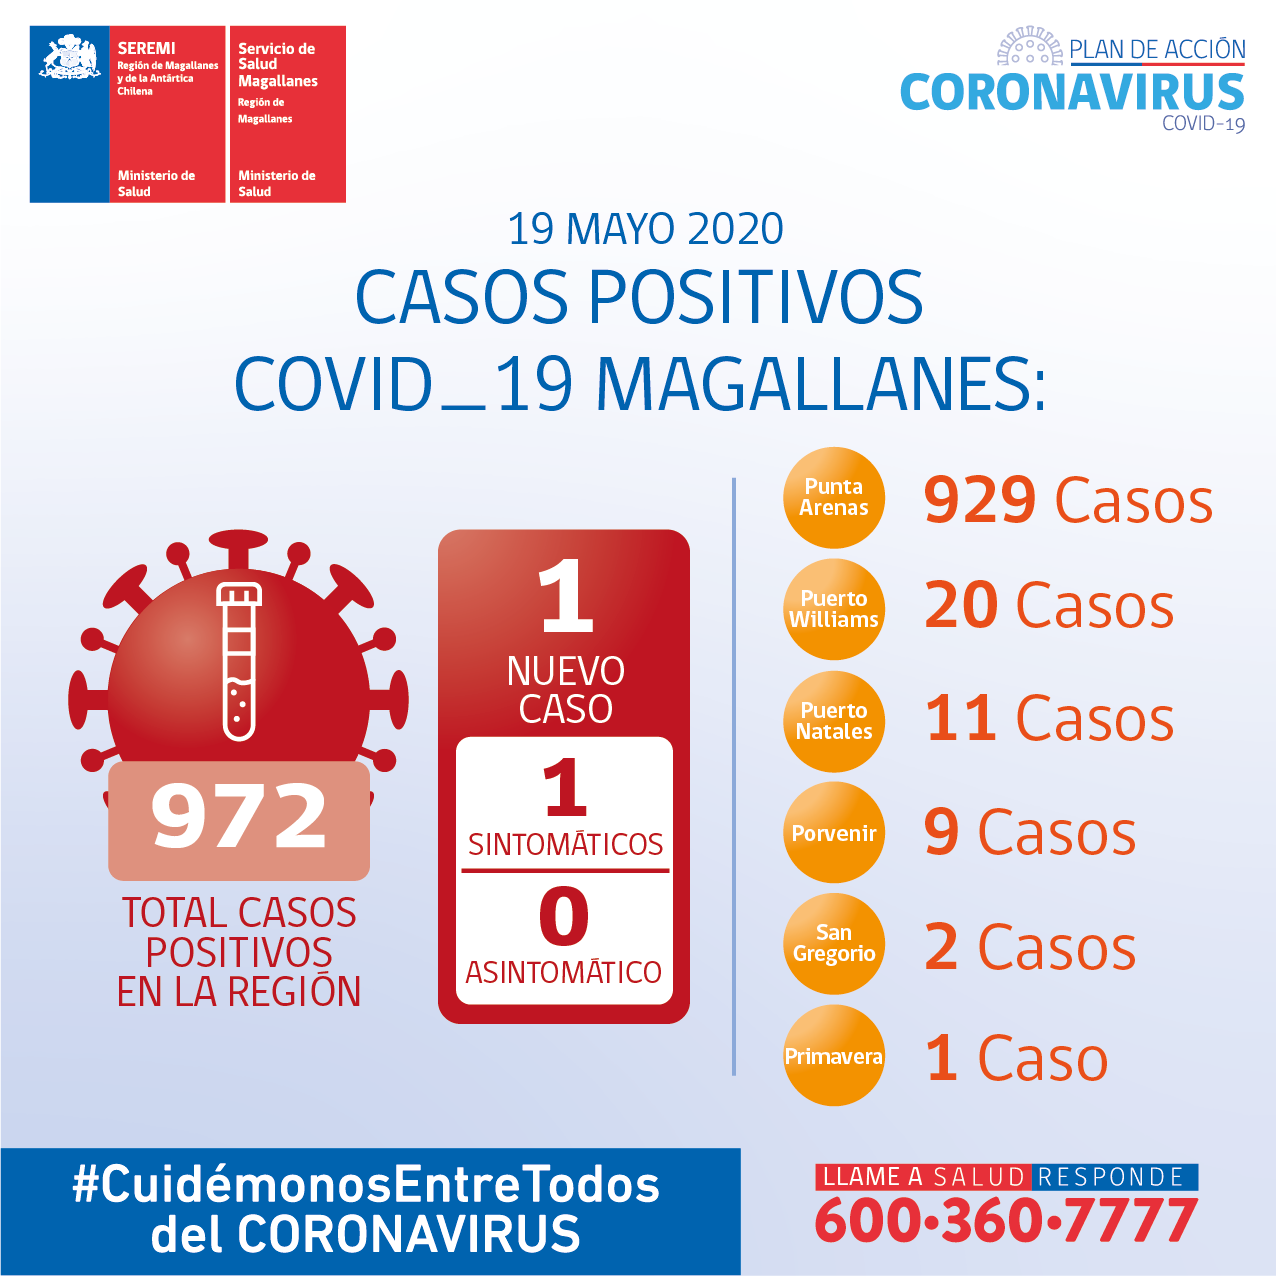 SEREMI de Salud de Magallanes: «no podemos olvidarnos de las medidas preventivas aunque se estén notificando menos casos de Covid19 en los últimos días»